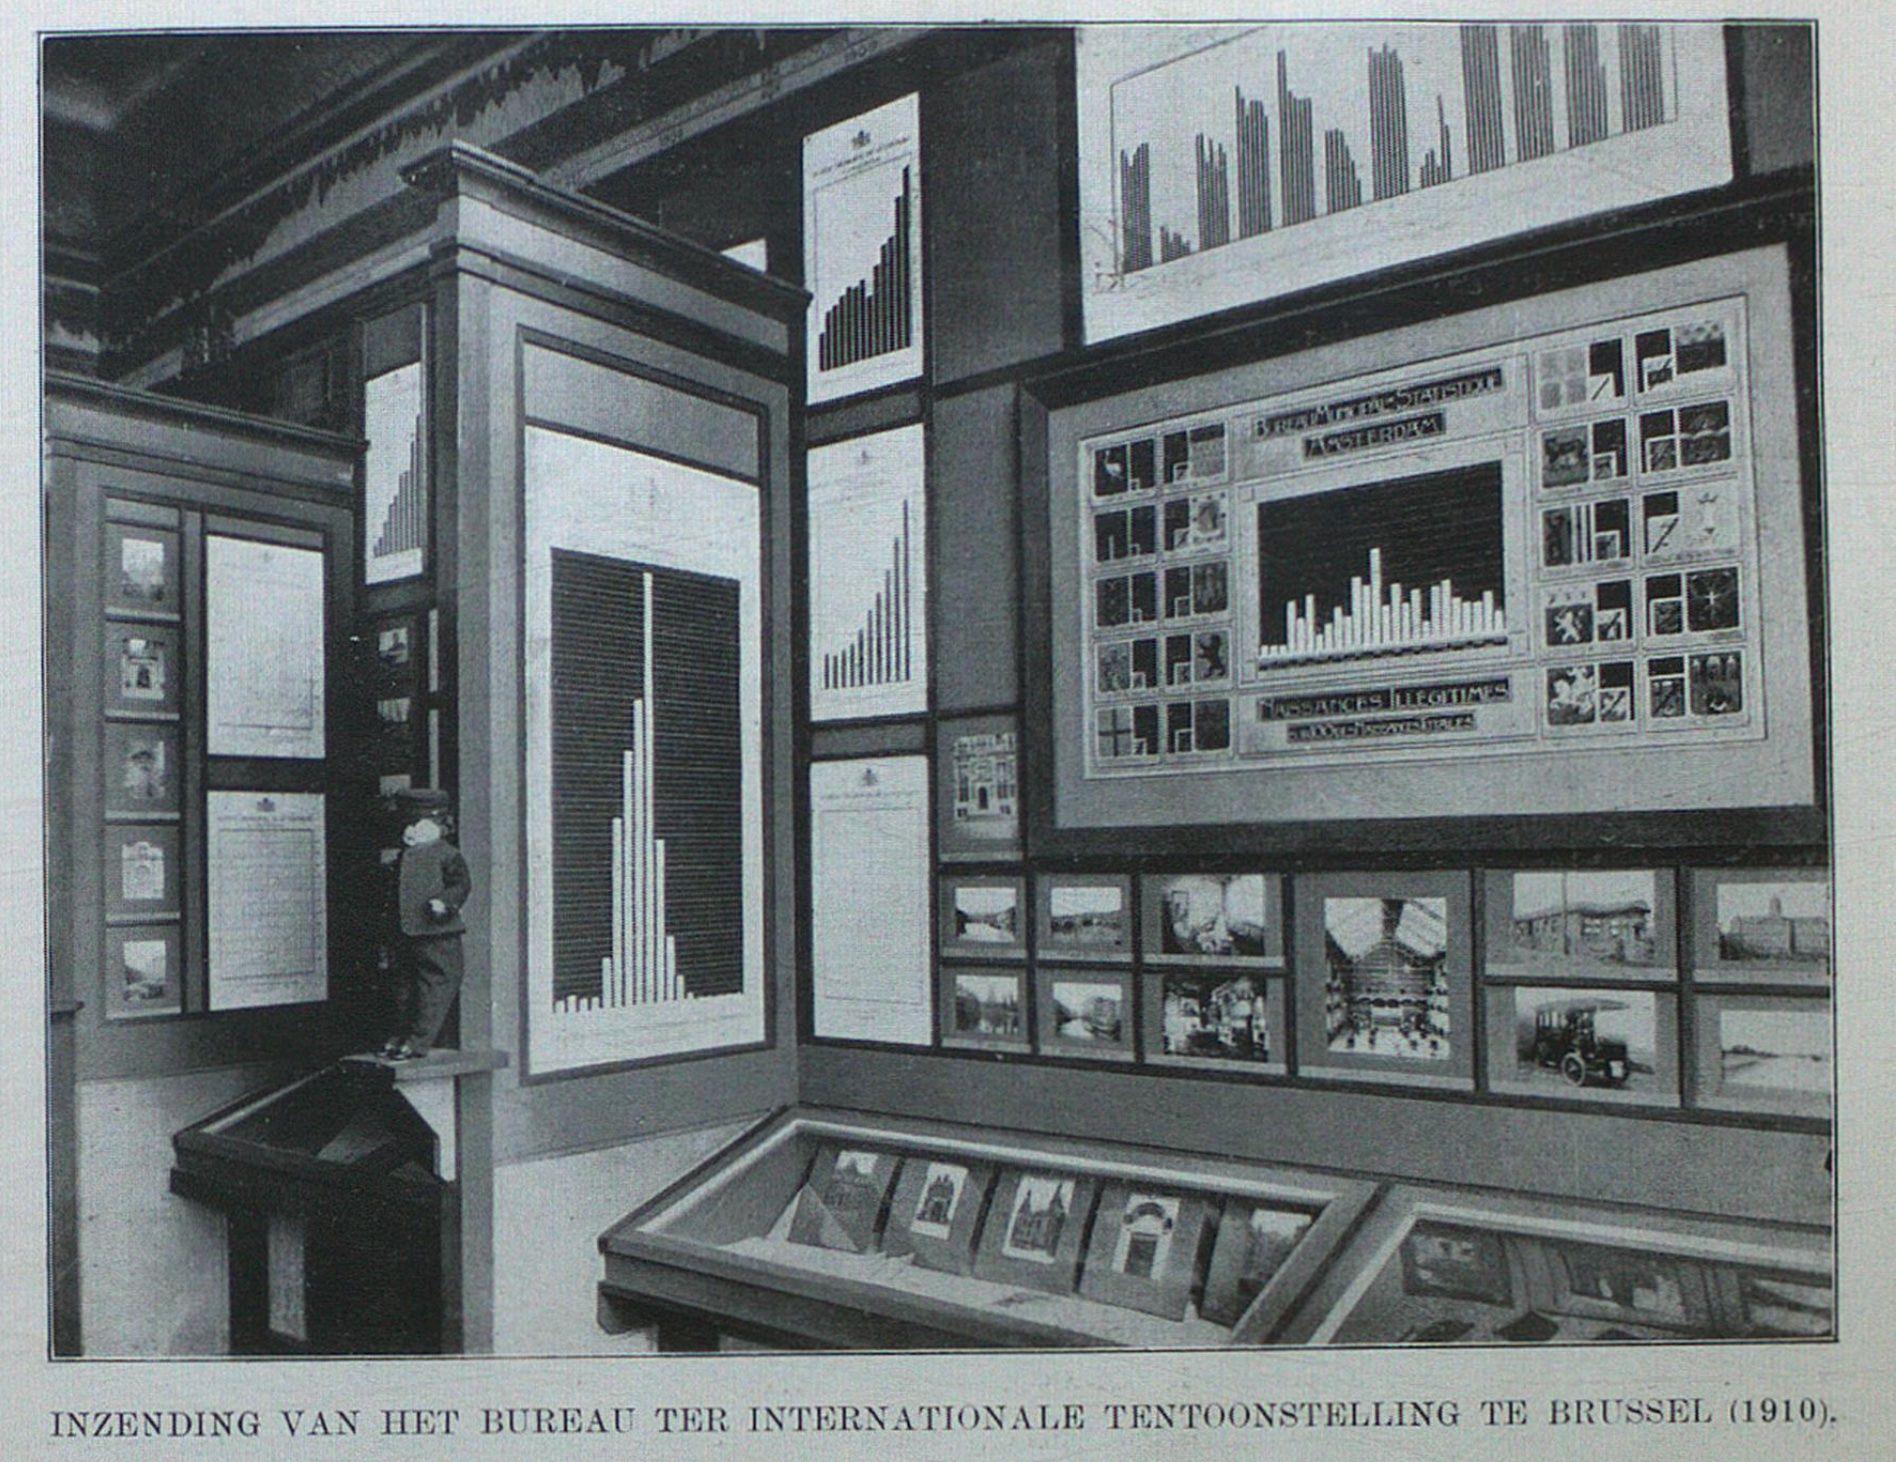 De bijdrage van het Bureau van Statistiek aan de internationale tentoonstelling in Brussel in 1910